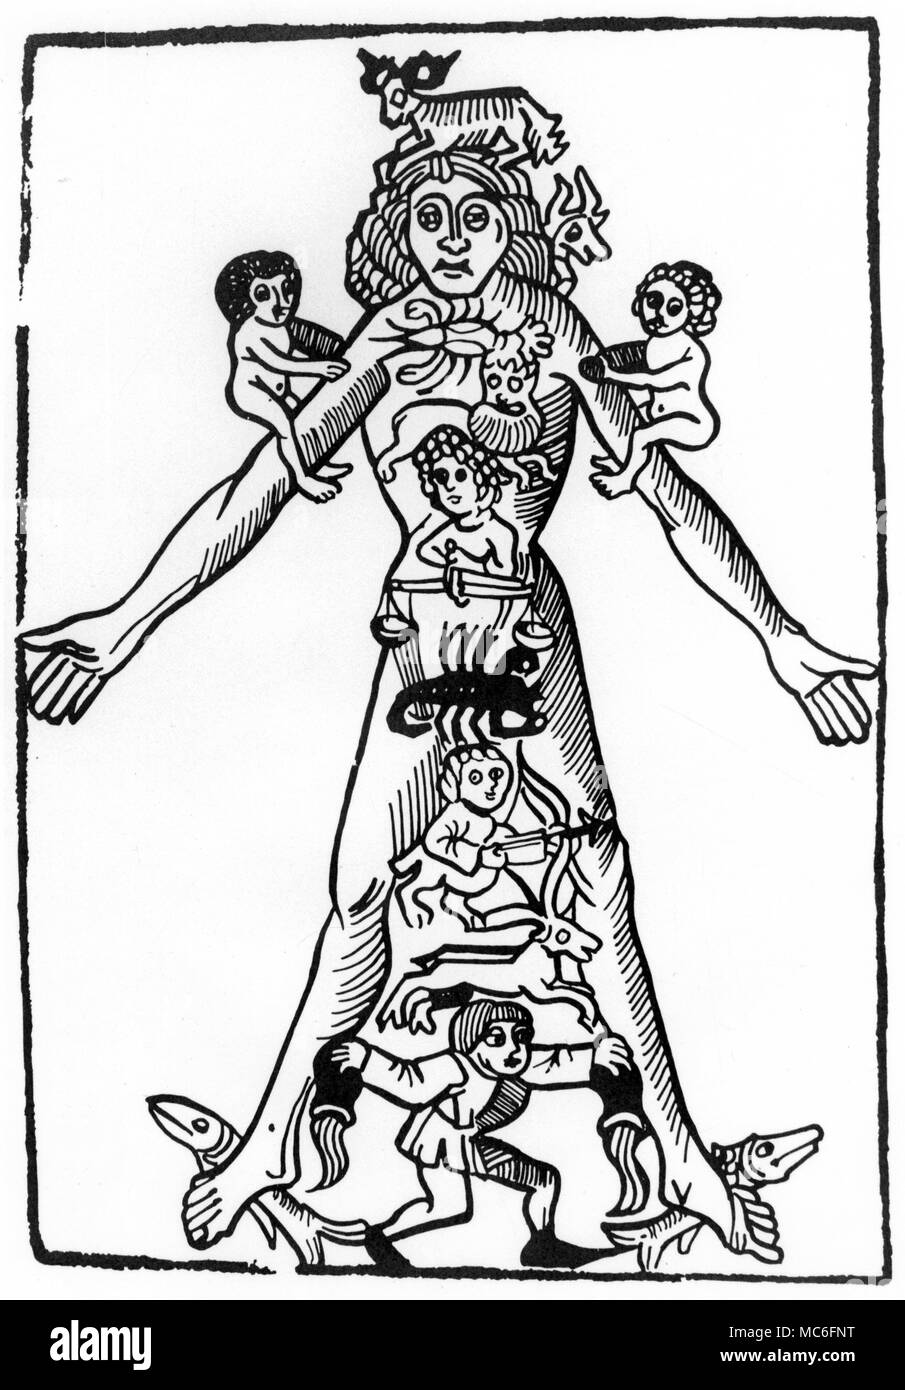 Uomo zodiacale, con ciascuno dei dodici segni attribuito alle parti esterne del corpo fisico - ad esempio la RAM di Aries è diretto verso la testa, per questo segno è la regola sui attuazione dell'uomo. Xv secolo la xilografia. Foto Stock